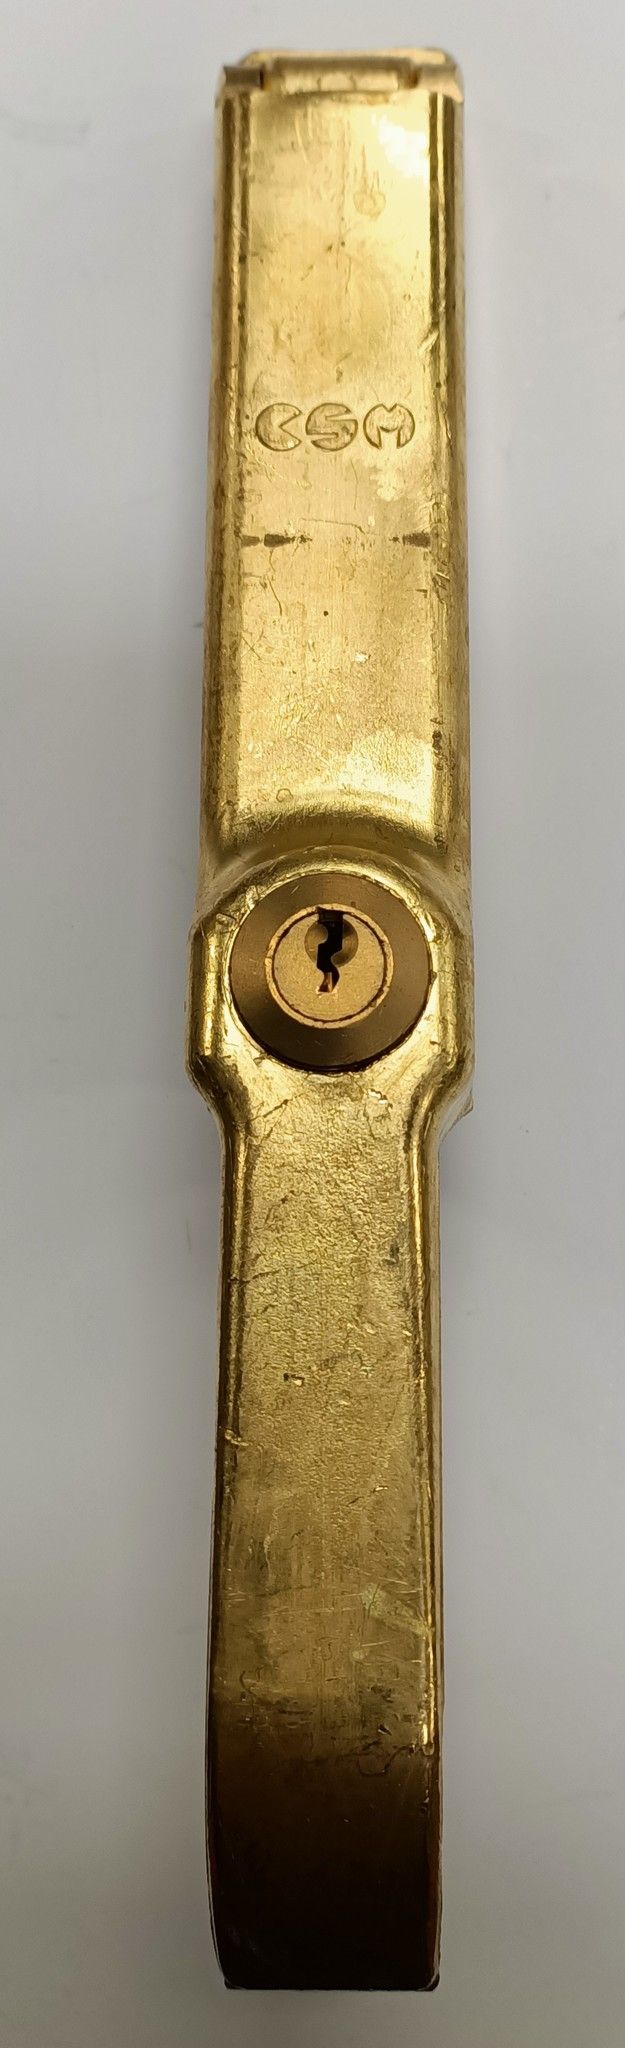 Cariglione CSM 2000 maniglione per cancello in ottone con cilindro a chiave centrale